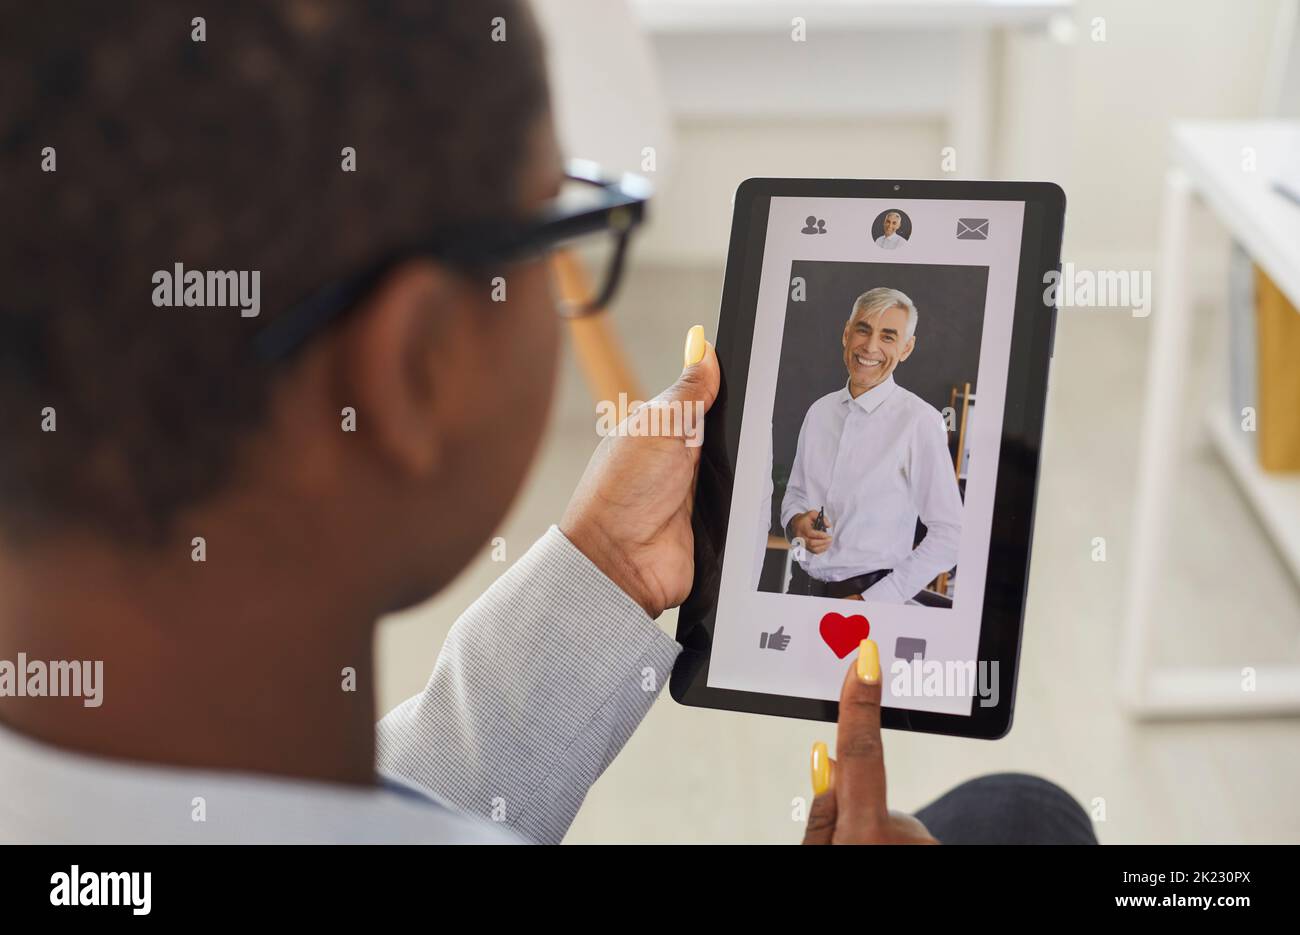 Giovane donna dà come a foto di uomo anziano su online dating app o sito internet Foto Stock